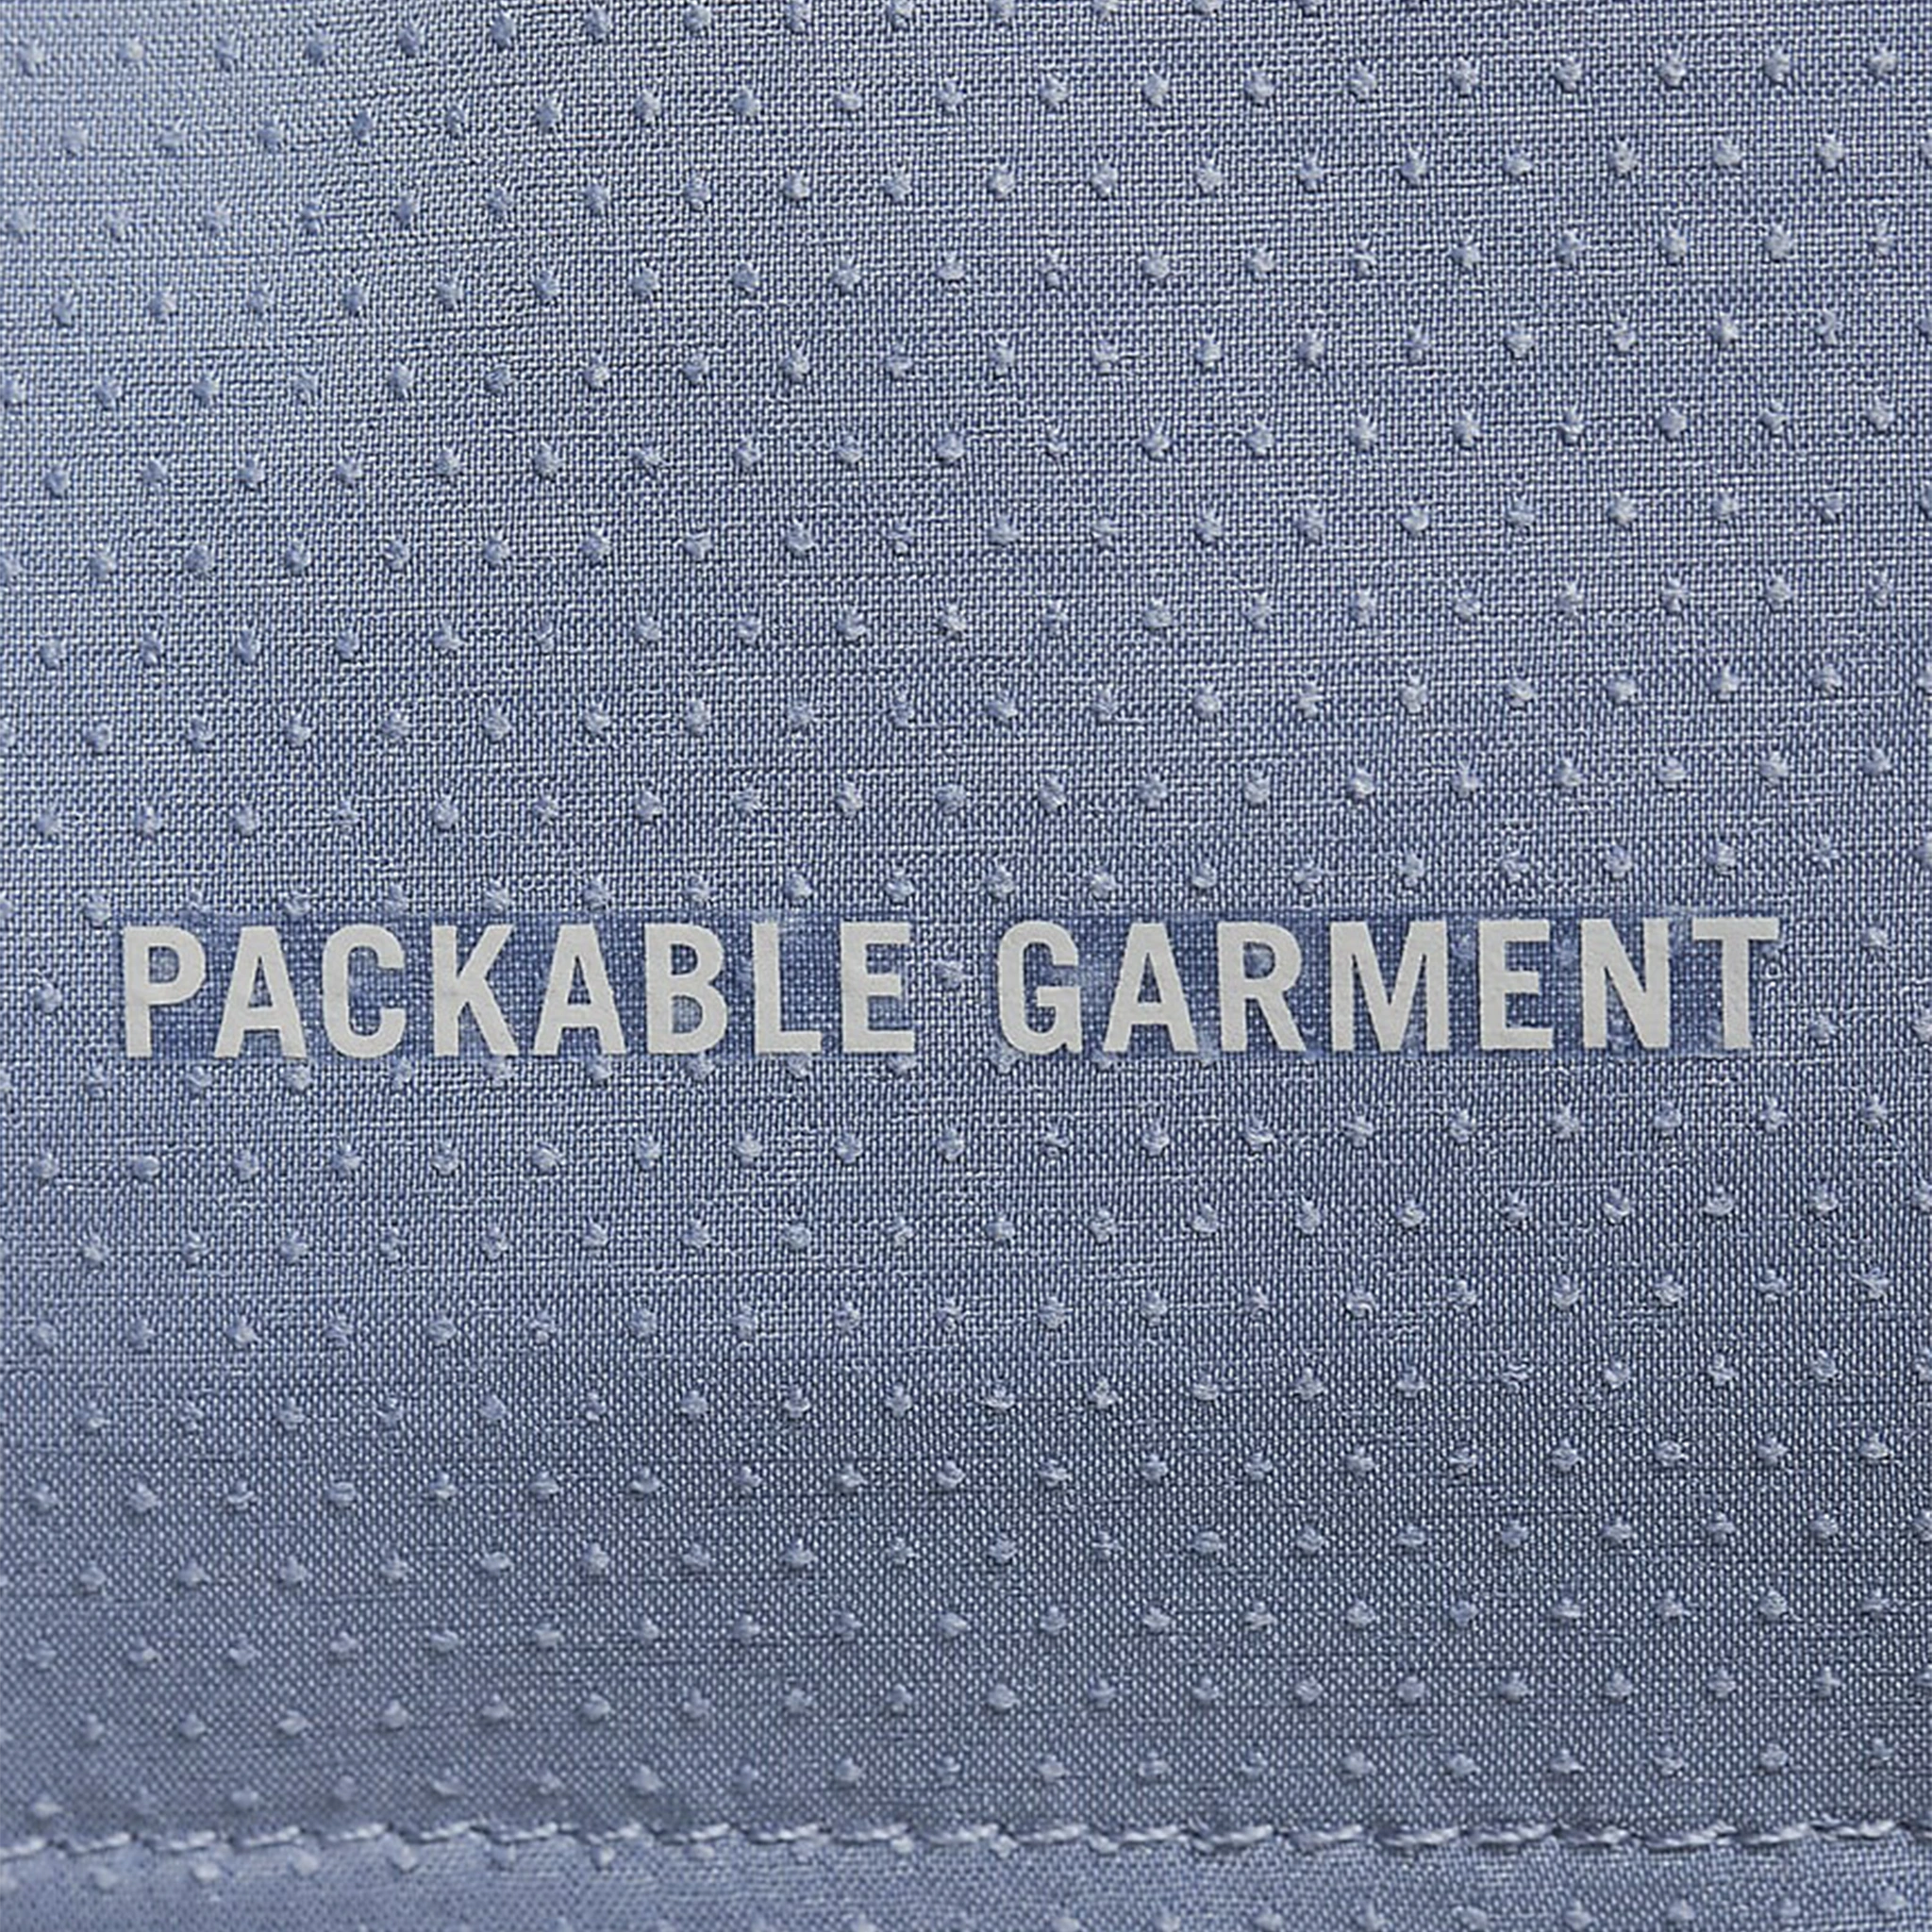 Back pocket view of Nike Repel Packable Cobalt Blue Windrunner Jacket CZ9071-479